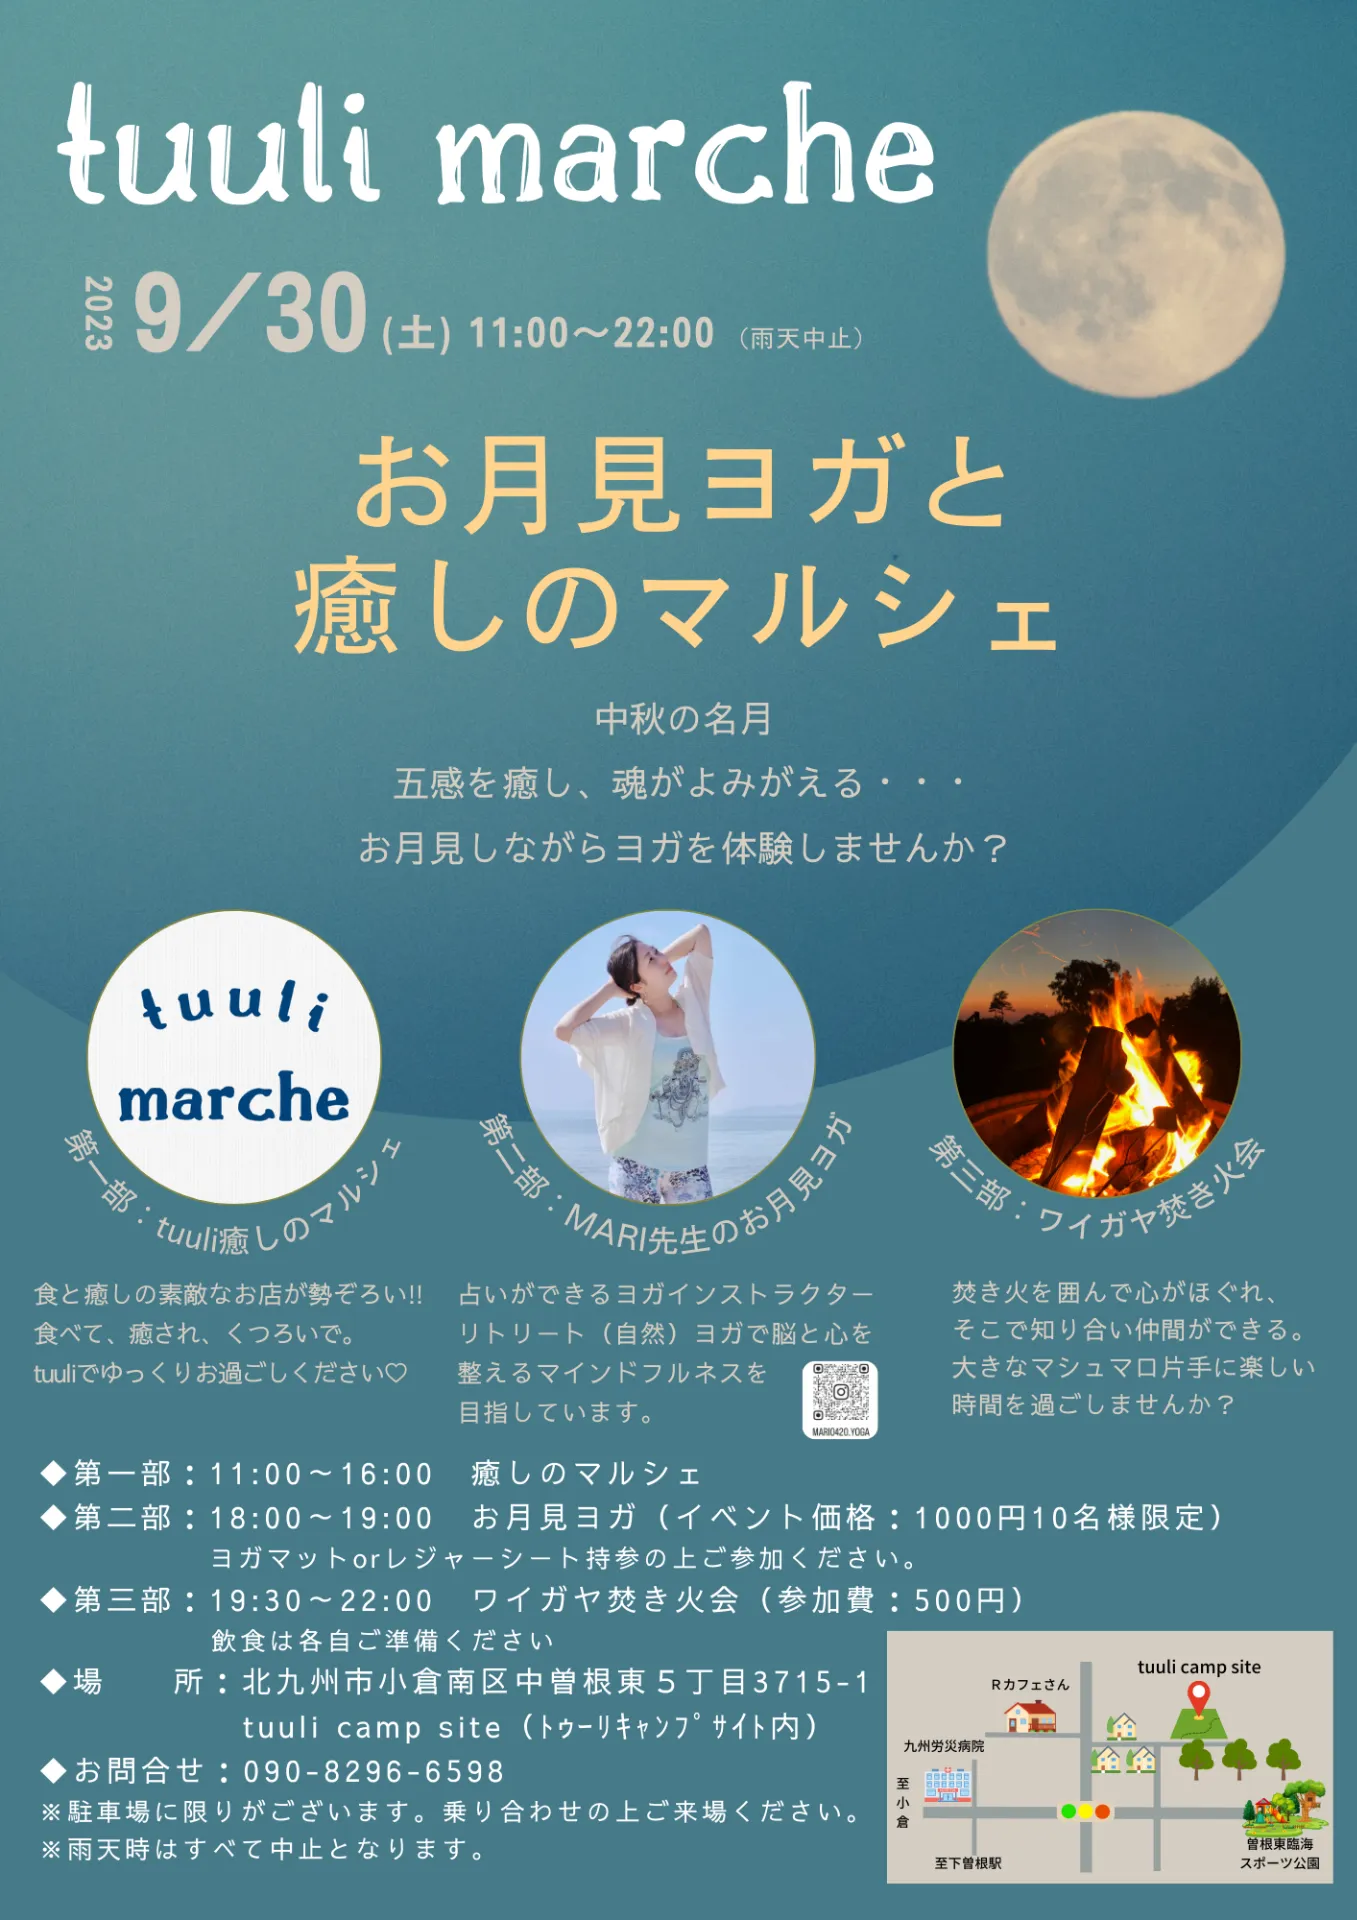 【9/30イベント開催】tuuli marche 北九州キャンプ場｜aroma & healing salon ylangylang.